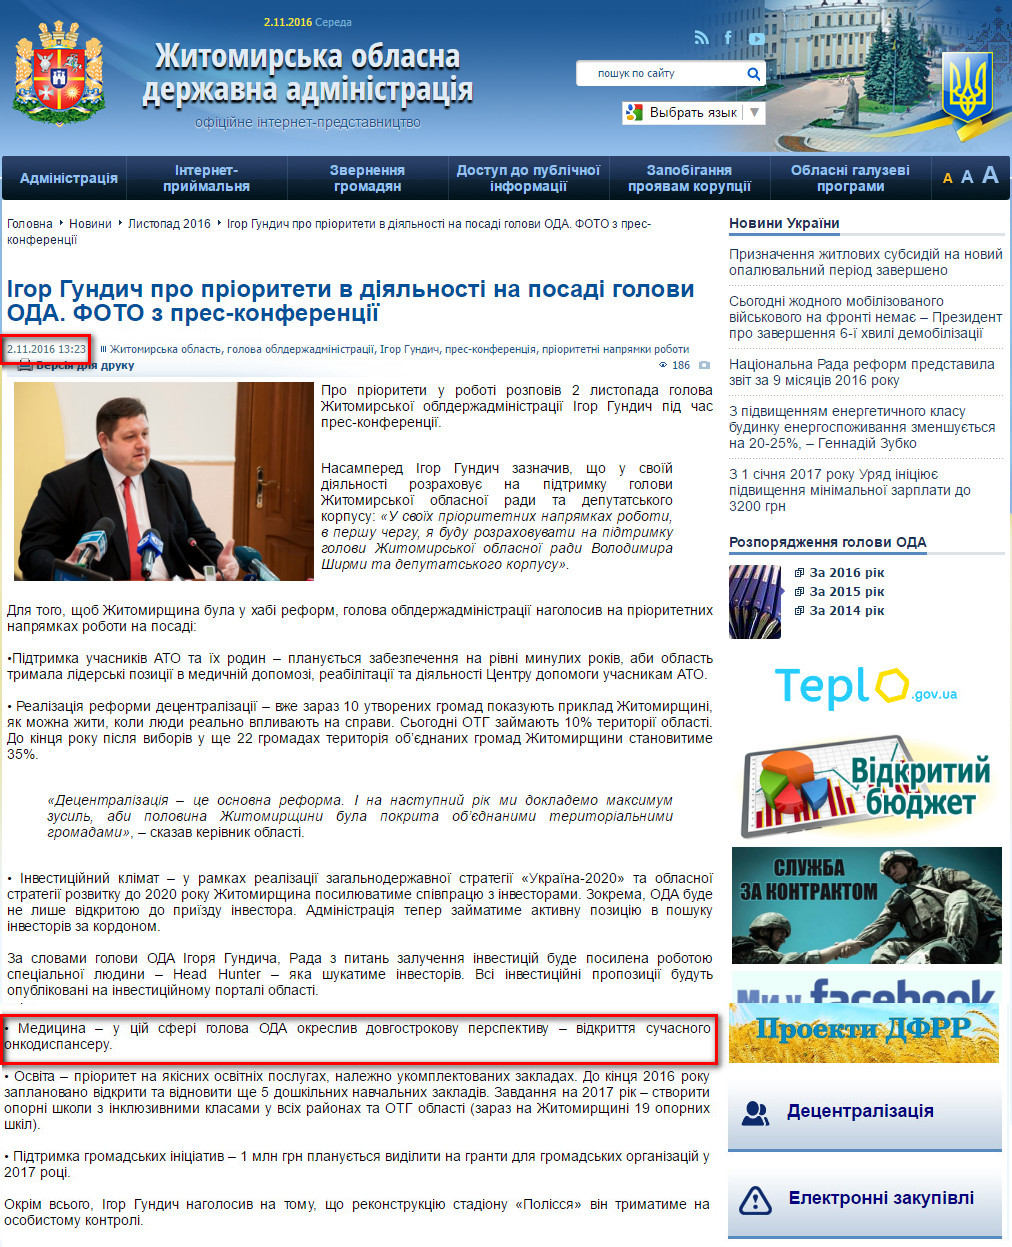 http://oda.zt.gov.ua/igor-gundich-pro-prioriteti-v-diyalnosti-na-posadi-golovi-oda.-foto-z-pres-konferenczii.html